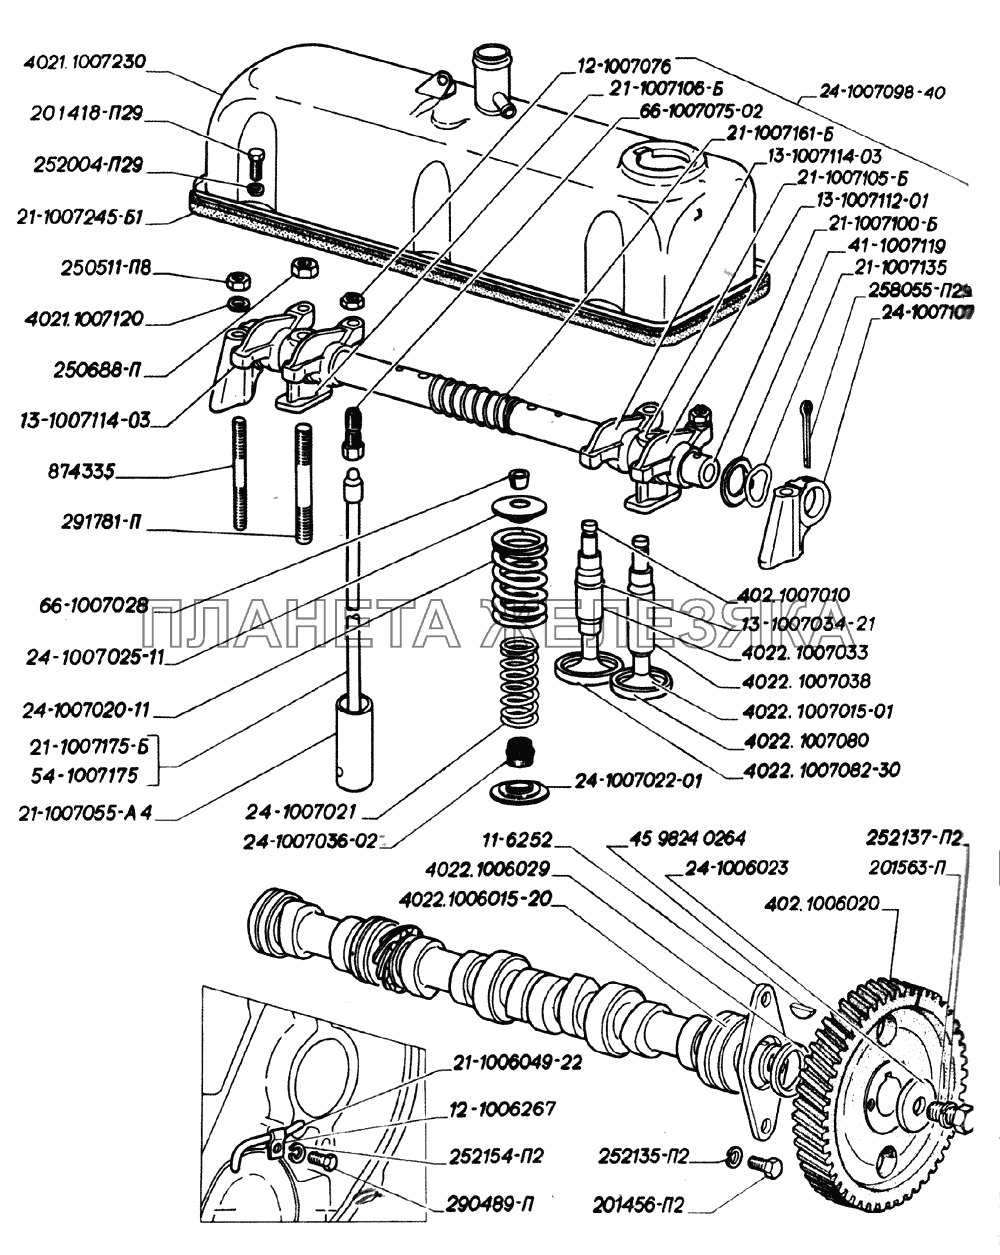 Вал распределительный, ось коромысел, клапаны и толкатели клапанов, крышка коромысел двигателей ЗМЗ-402 ГАЗ-2705 (дв. ЗМЗ-402)